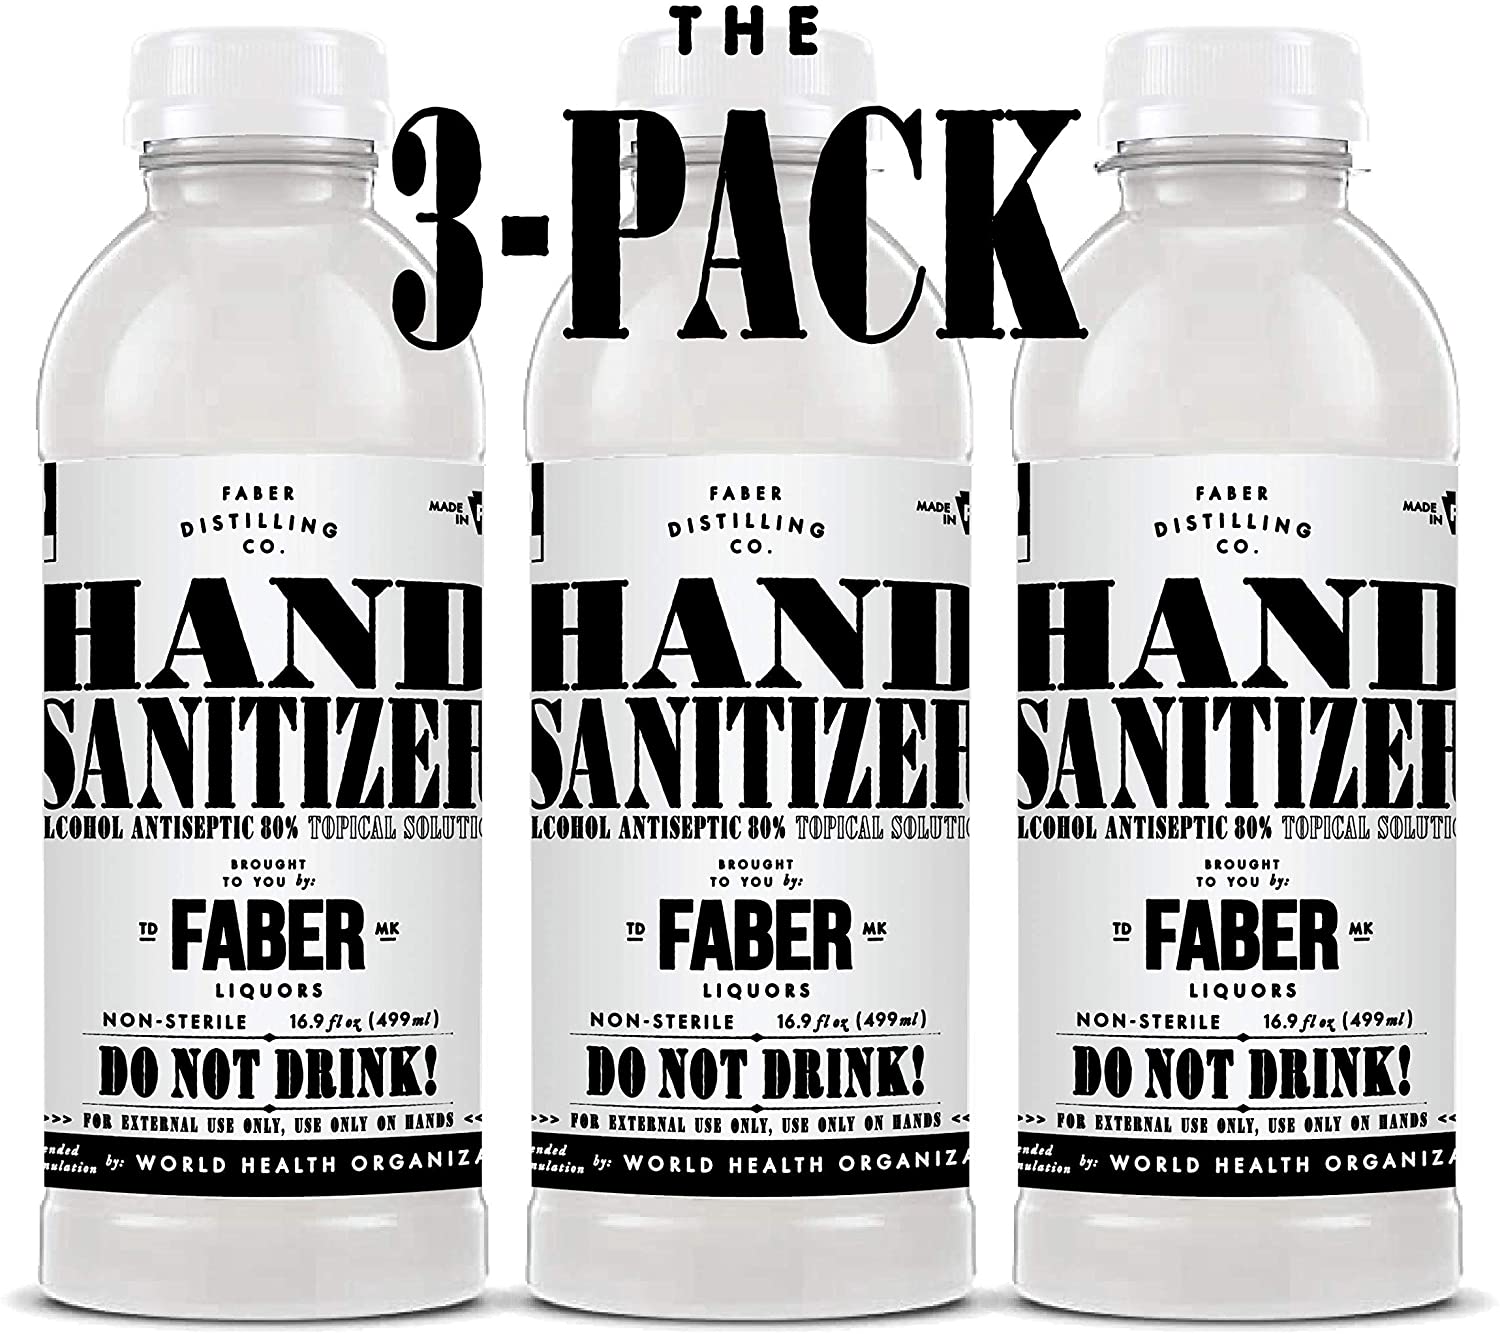 Faber Hand Sanitizer Unscented Liquid Antiseptic Hand Sanitizer 3 pack 16oz Bottles